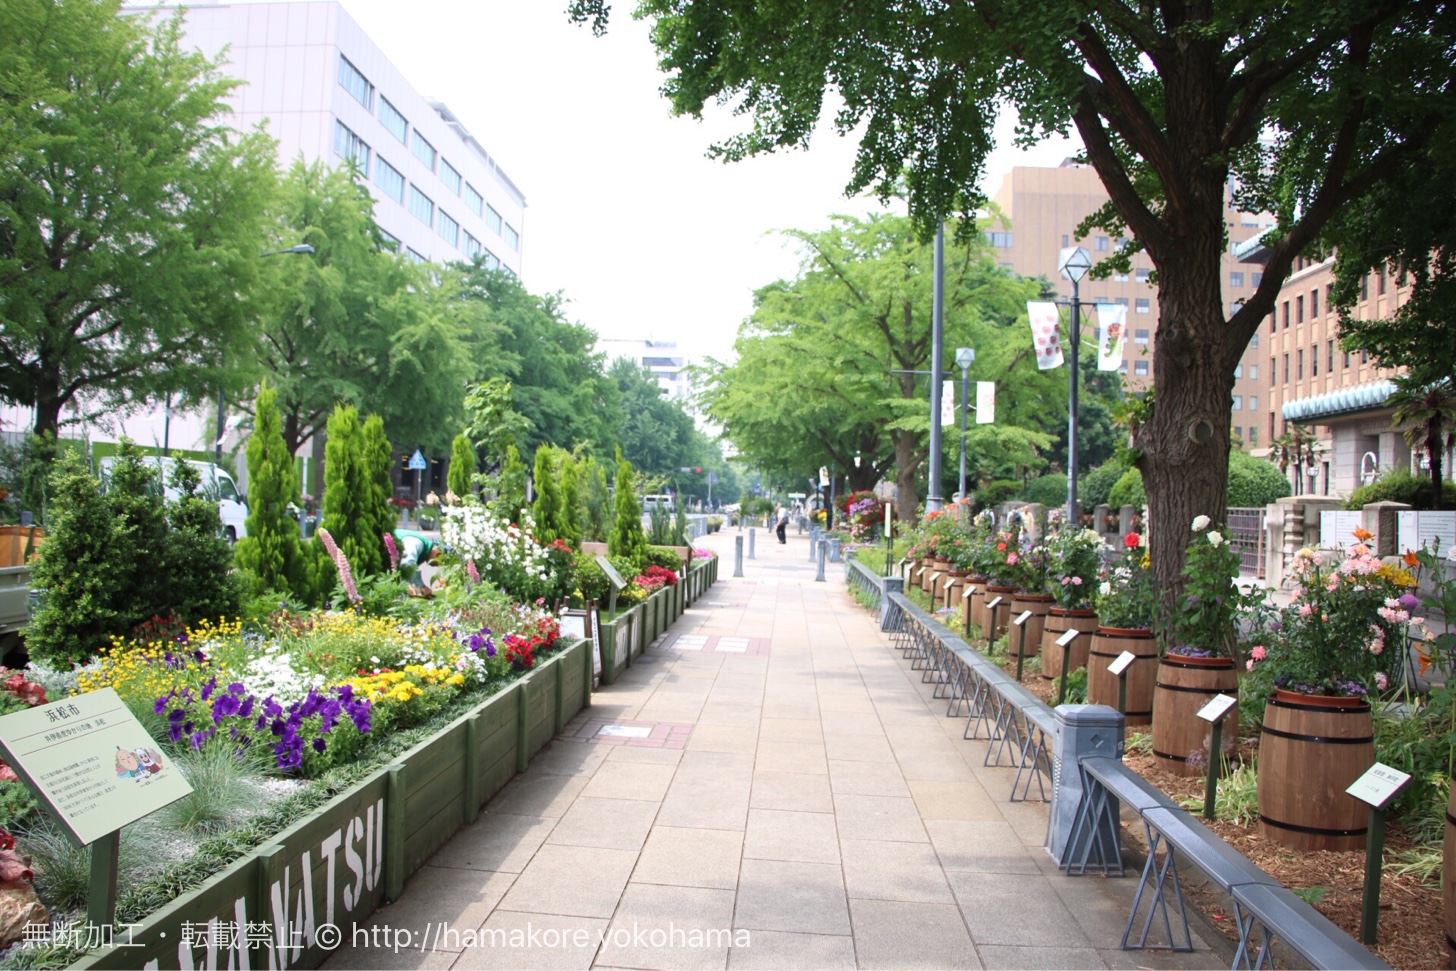 横浜公園 日本大通り ガーデンネックレス で満開に咲く花と街並みに感動 はまこれ横浜